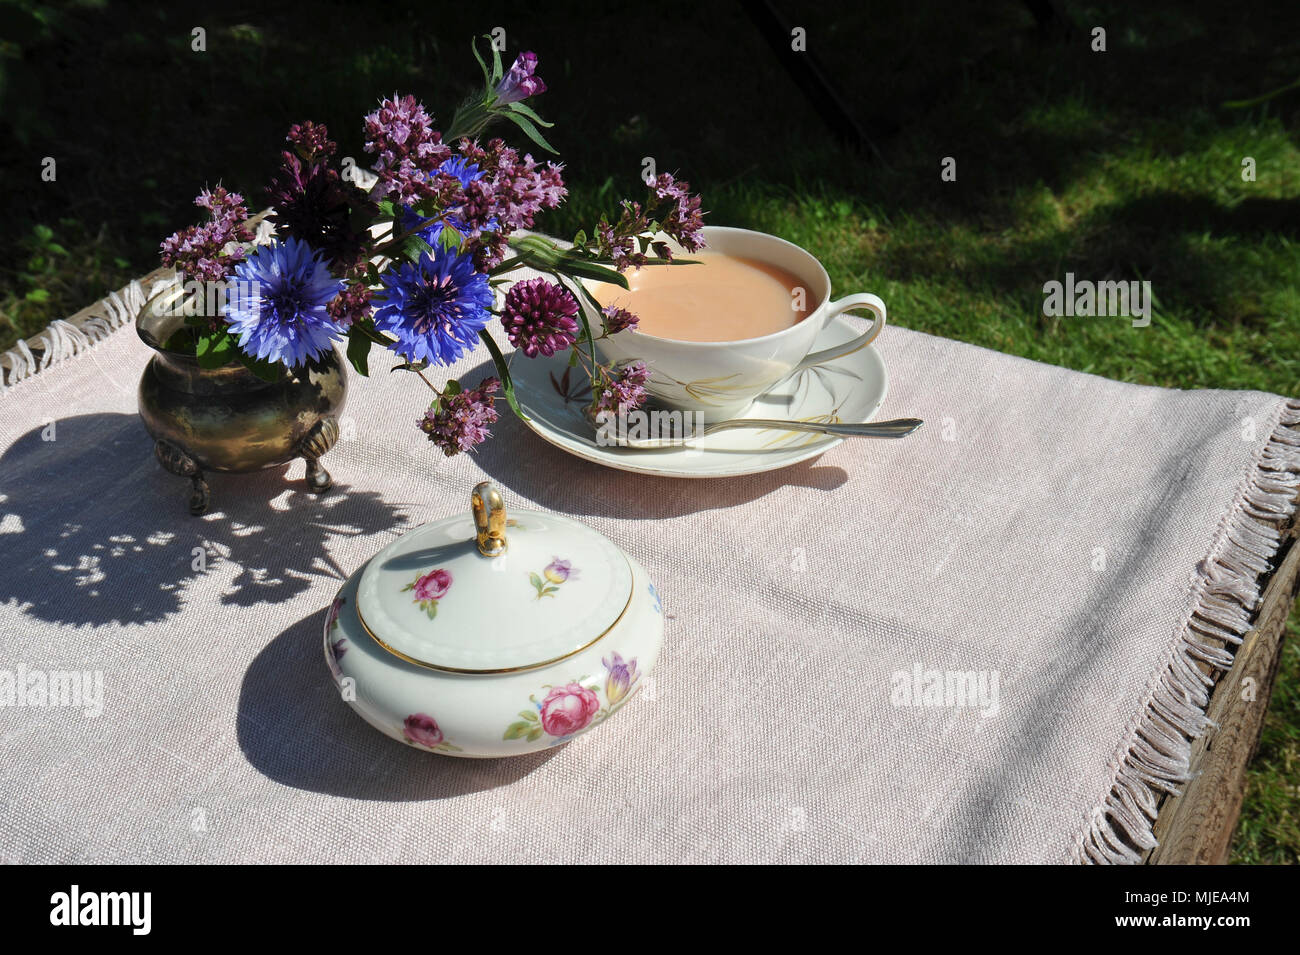 Tea time in the garden Stock Photo